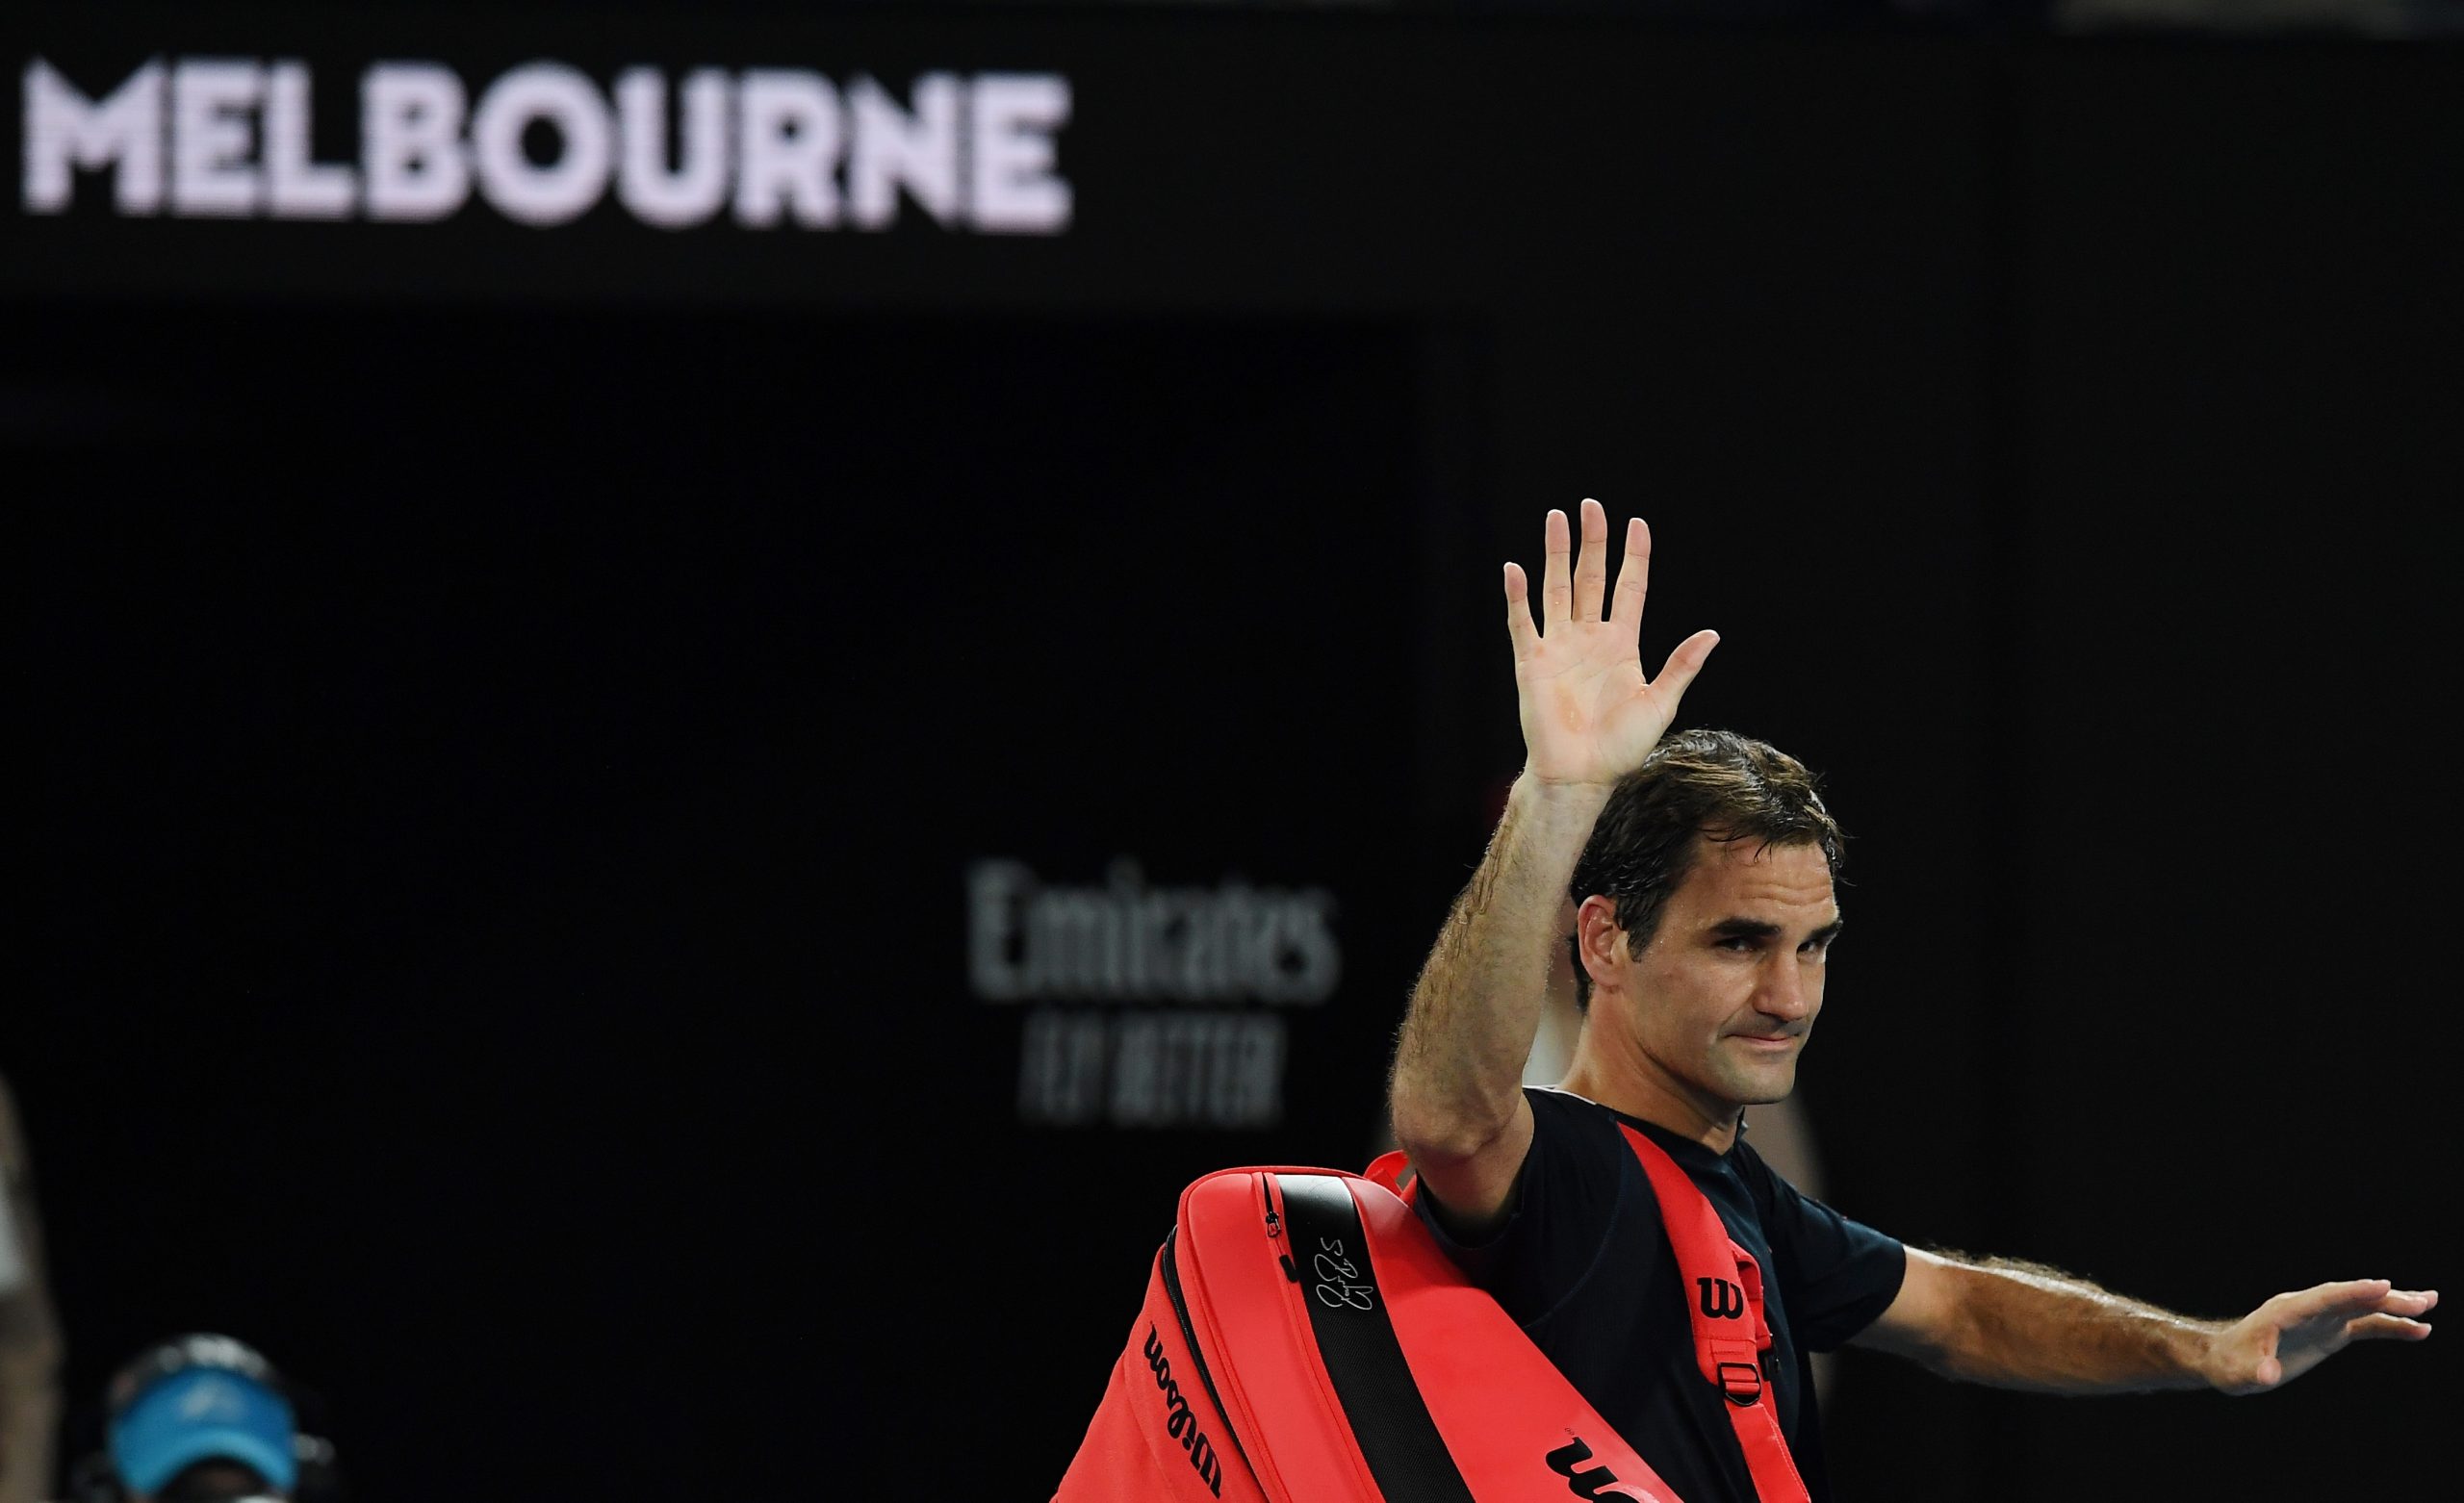 Australian Open Roger Federer